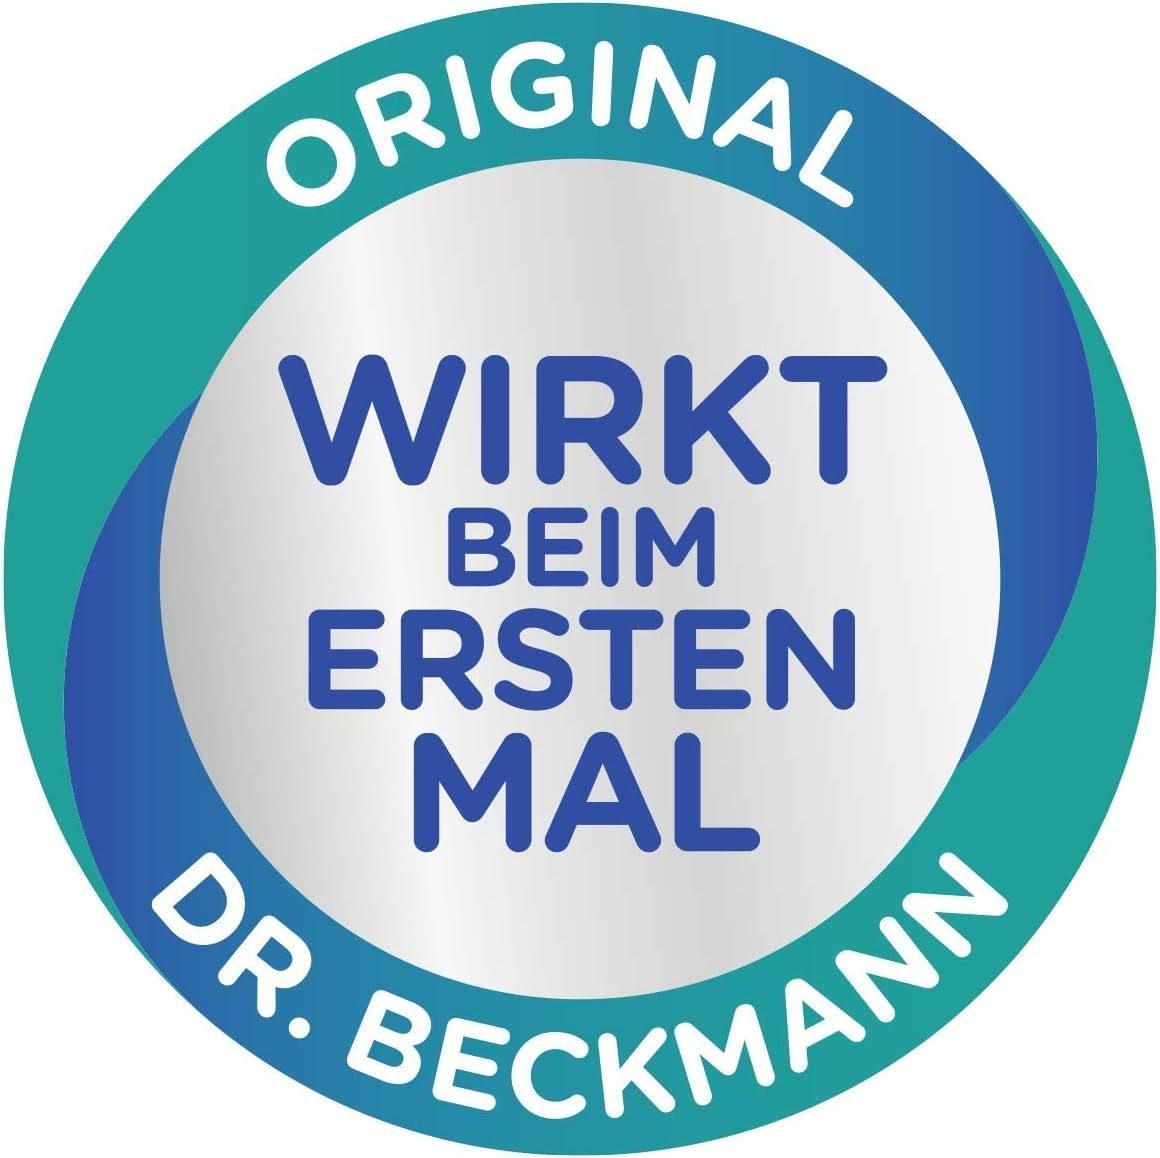 Farbfrische, Dr. gegen Verfärbungen, leichte g Beckmann (1-St) Fleckentferner Fleckensalz 400